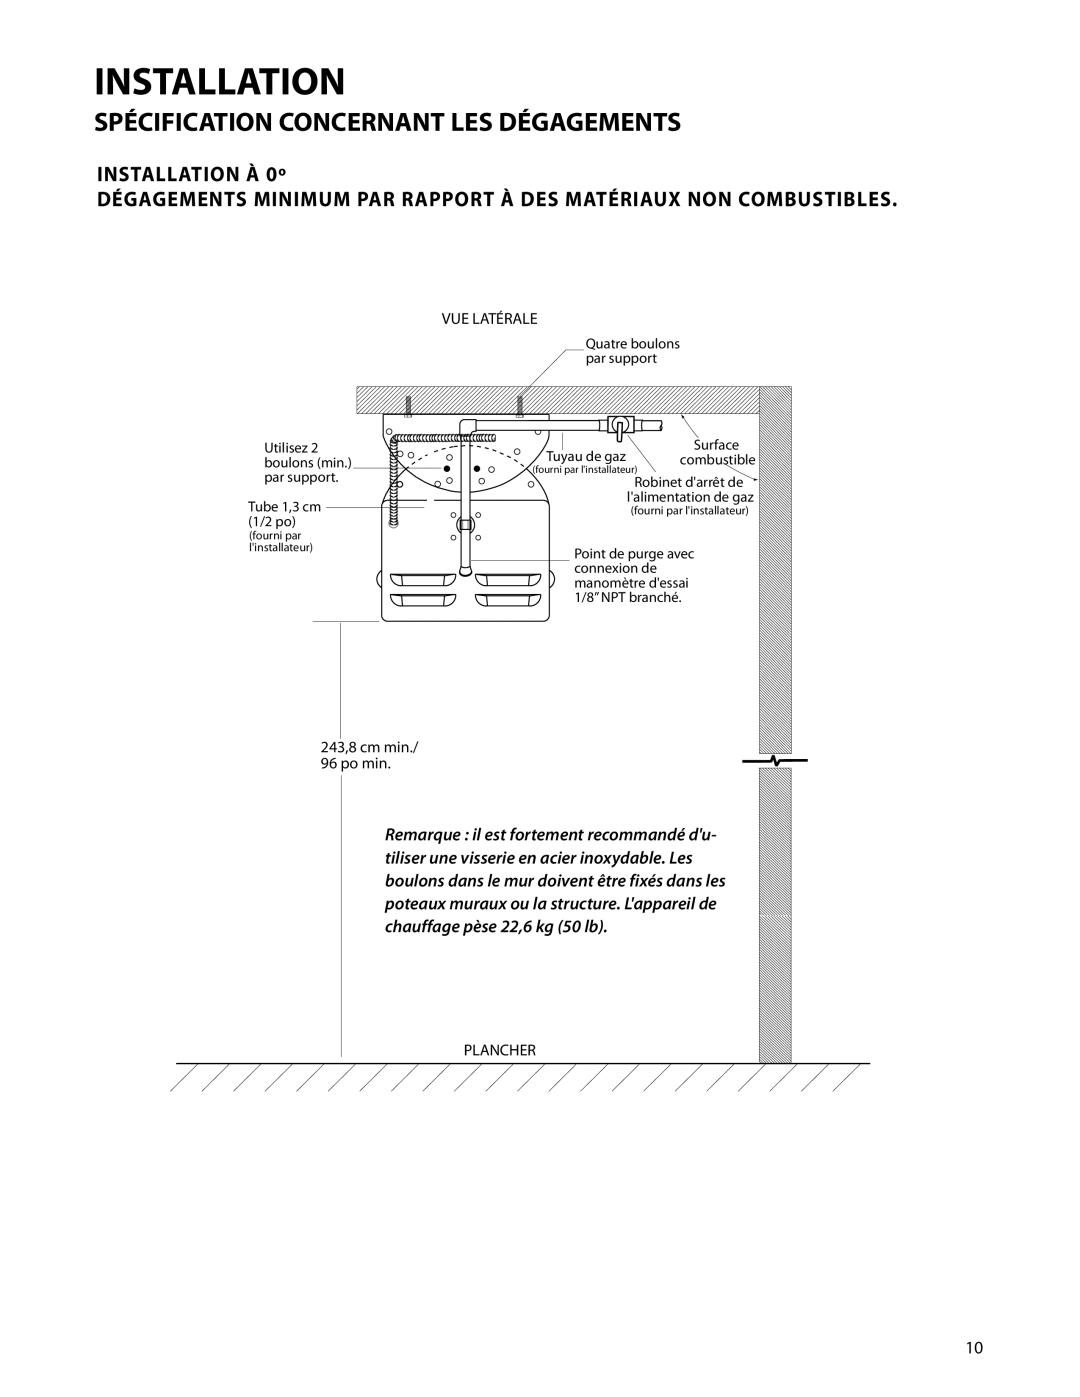 DCS DRH-48N Dégagements Minimum Par Rapport À Des Matériaux Non Combustibles, Installation, INSTALLATION À 0º, Plancher 